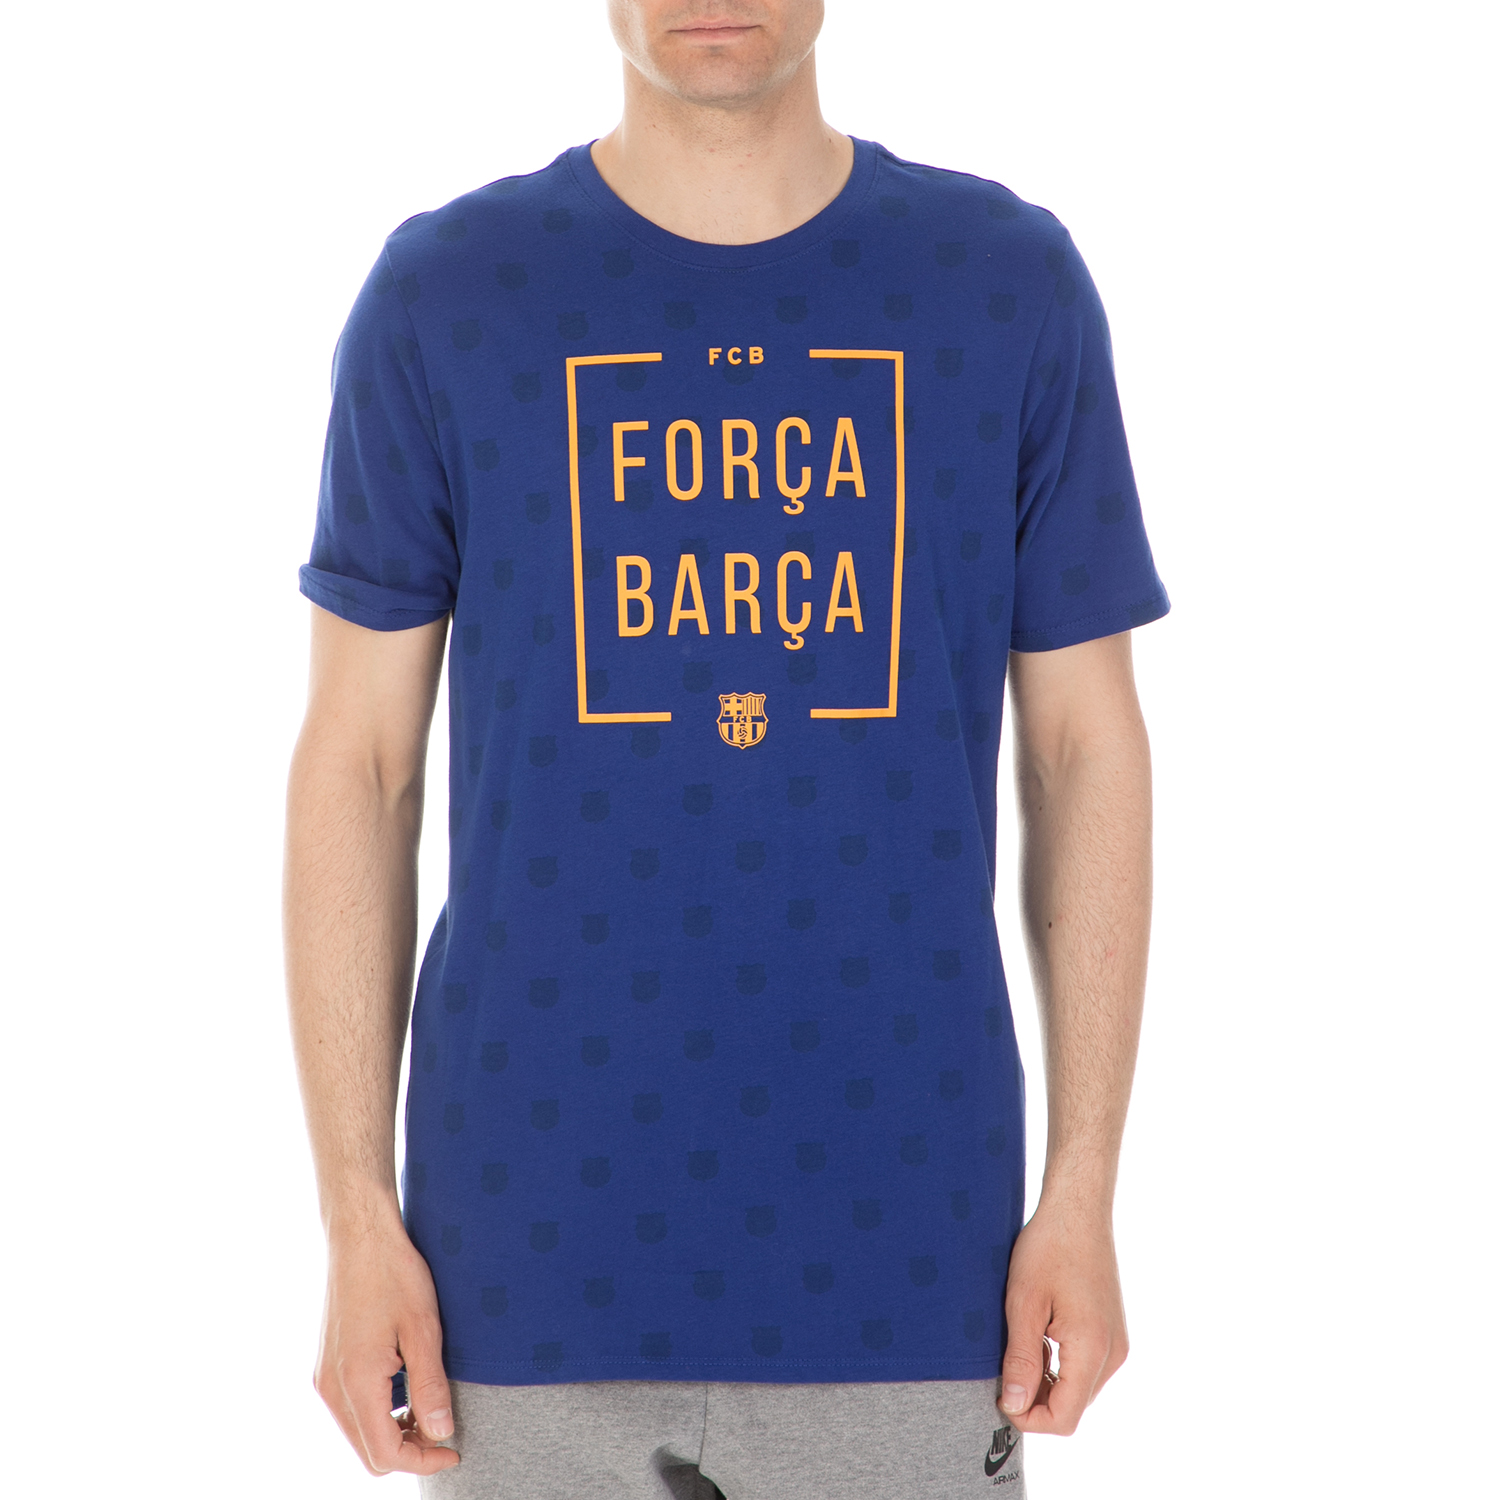 NIKE - Ανδρικό t-shirt Nike FC Barcelona μπλε Ανδρικά/Ρούχα/Αθλητικά/T-shirt